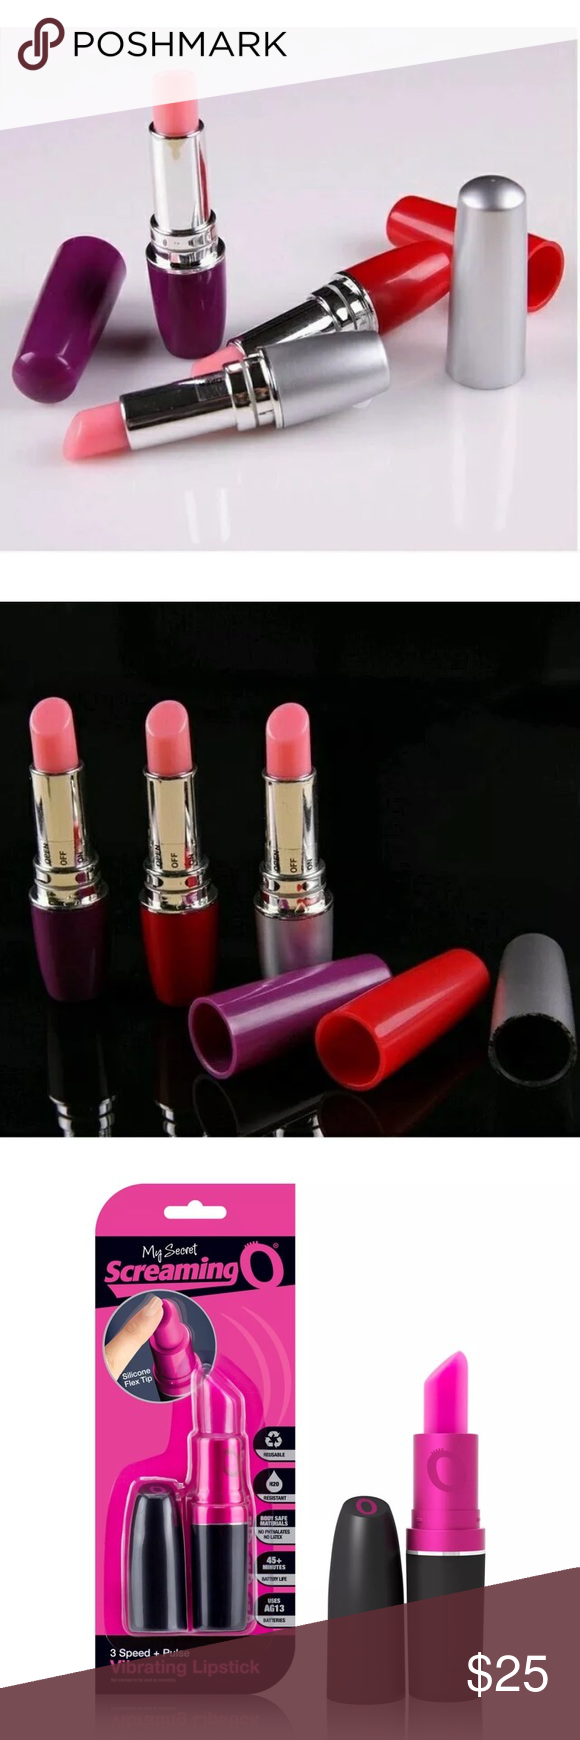 Poison I. reccomend Vibrator desguised as lipstick